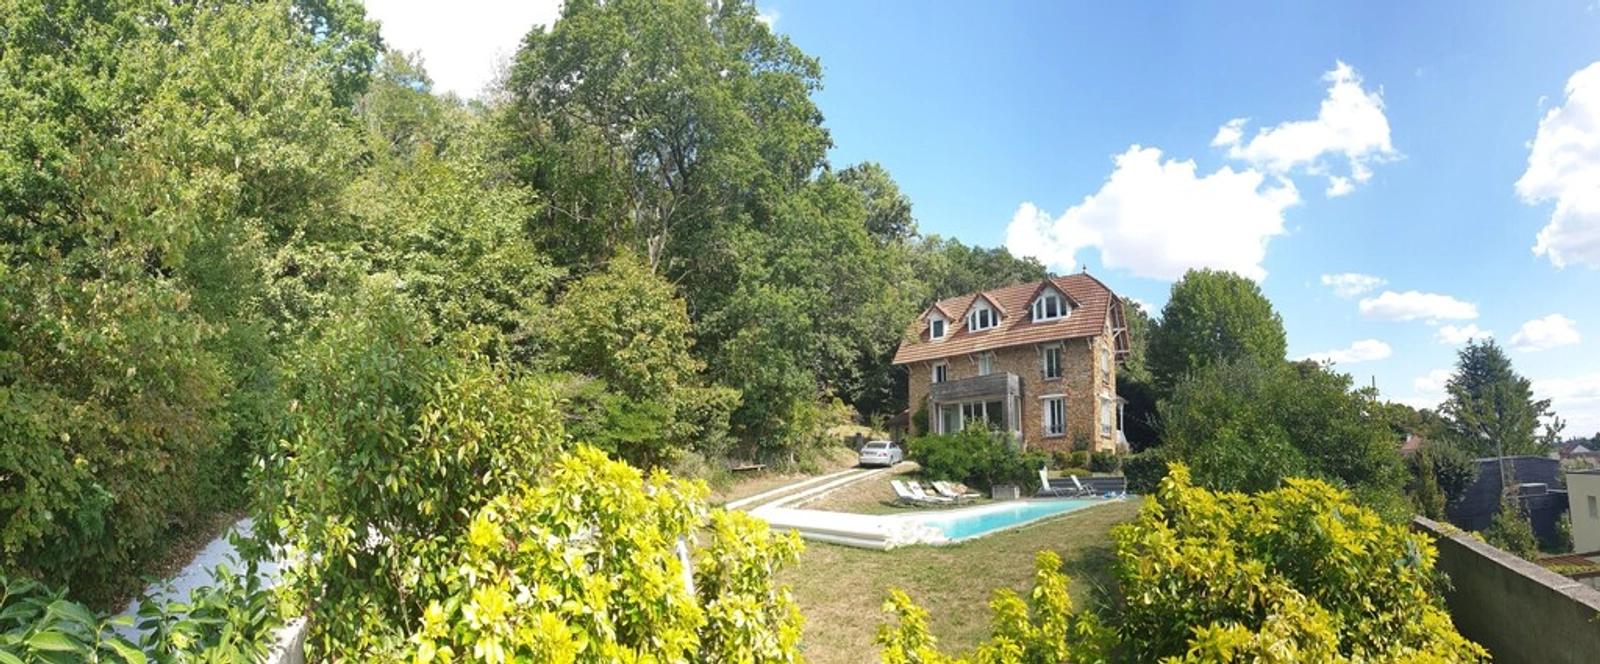 Espace Maison en bord de forêt avec vue et piscine - 4